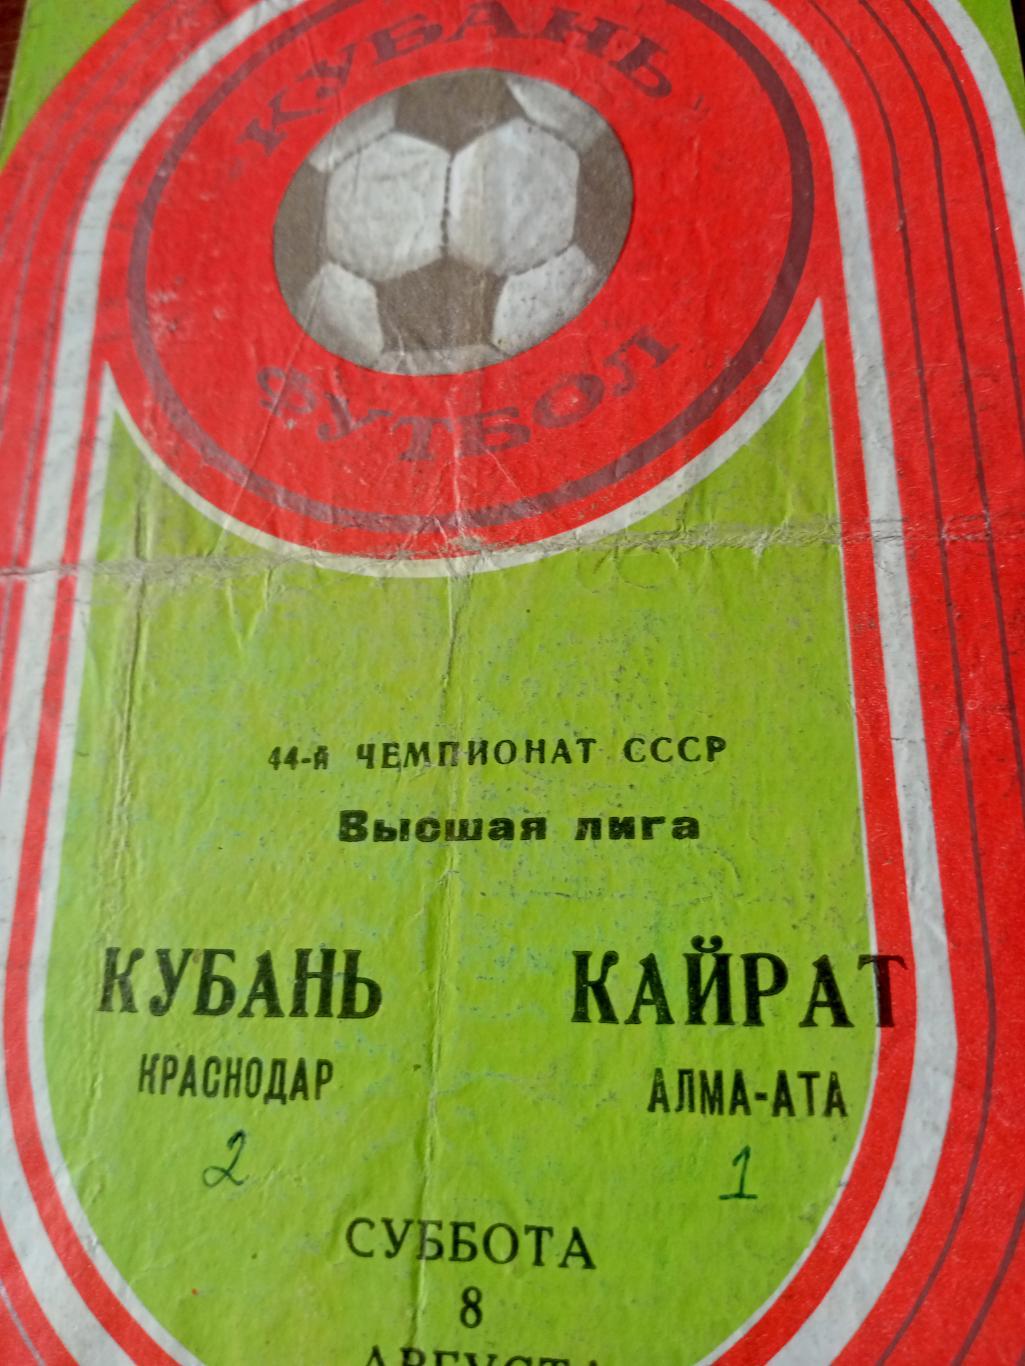 Кубань Краснодар - Кайрат Алма-Ата. 8 августа 1981 год